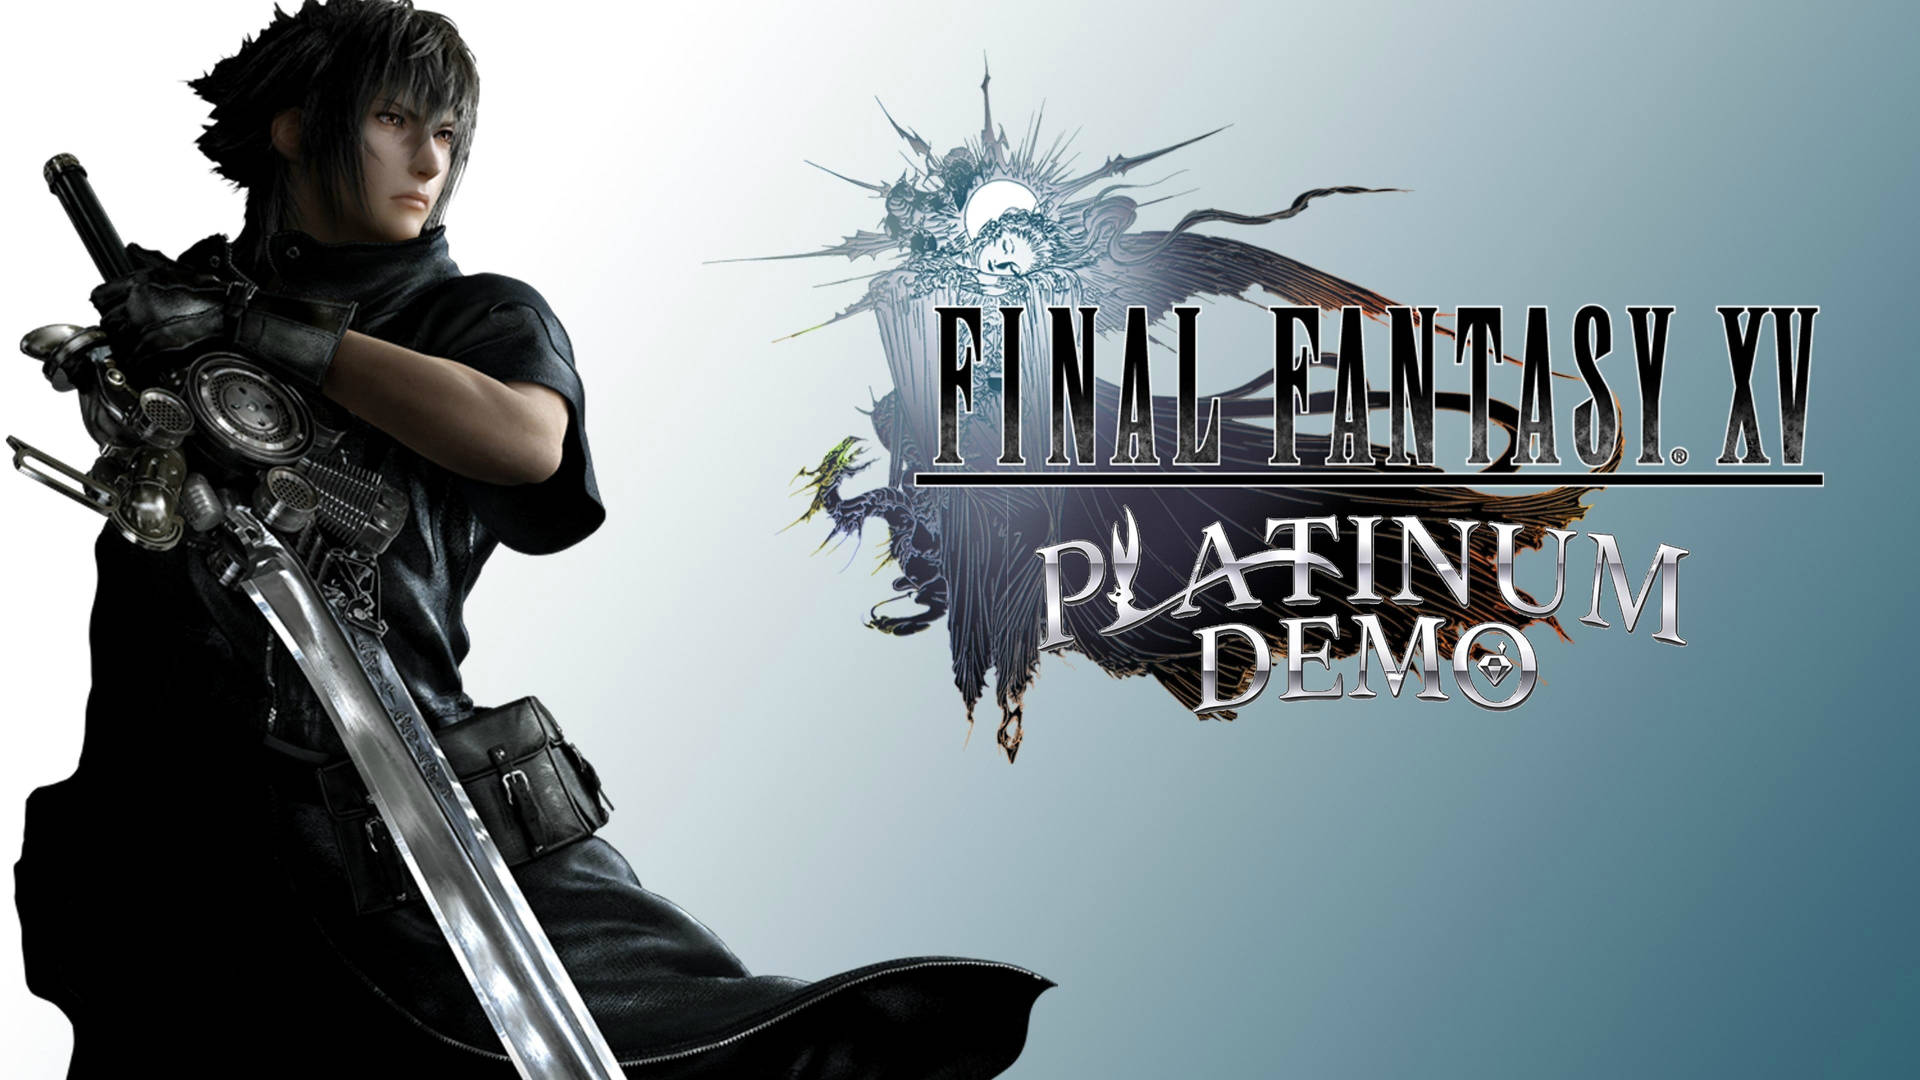 Final Fantasy Xv Platinum Demo